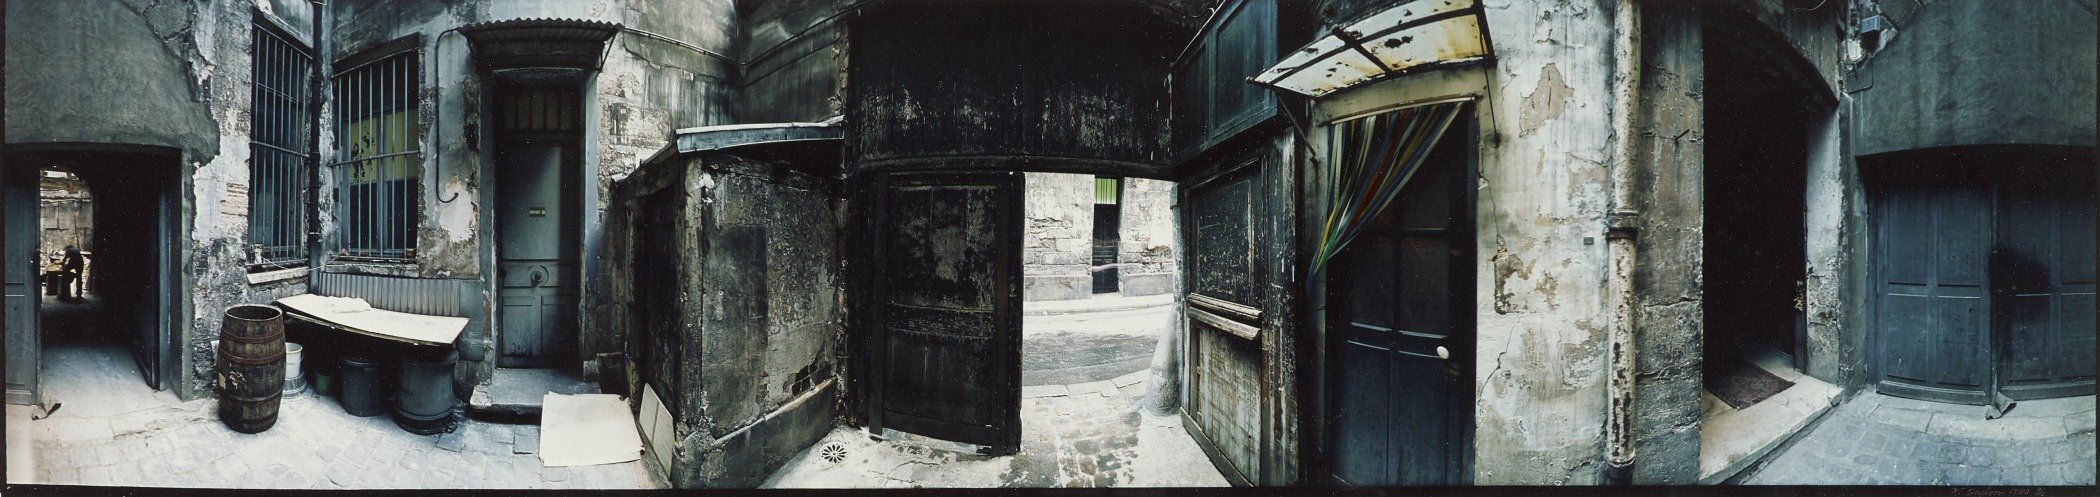 Paris - Small Court with Blue Door